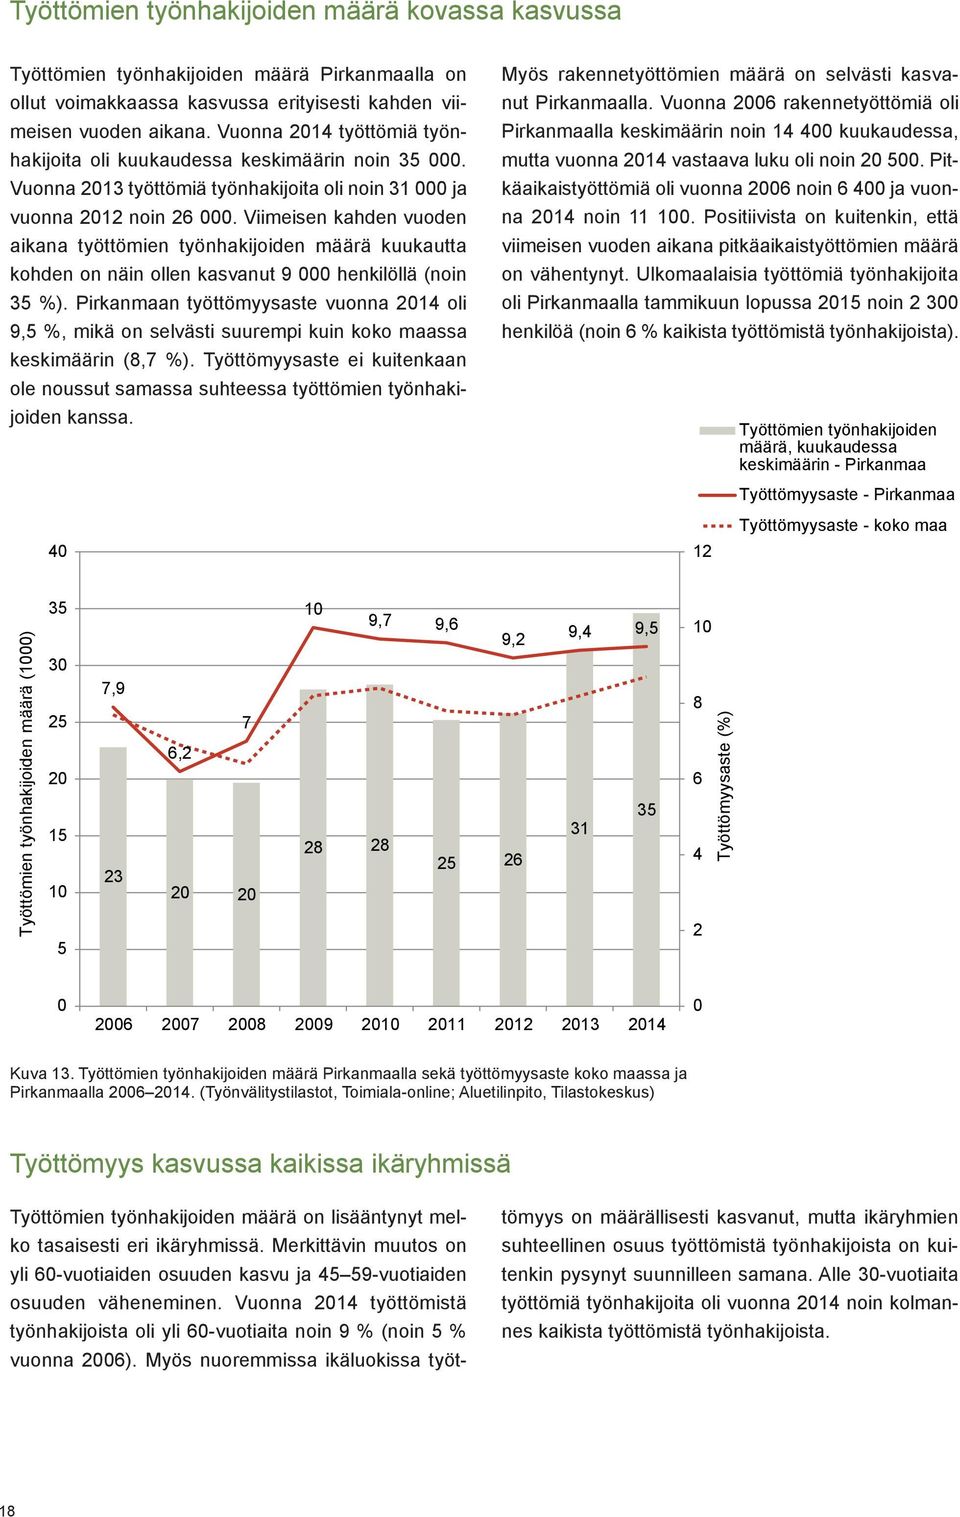 25 2 15 1 5 Työttömien työnhakijoiden määrä Pirkanmaalla on ollut voimakkaassa kasvussa erityisesti kahden viimeisen vuoden aikana.